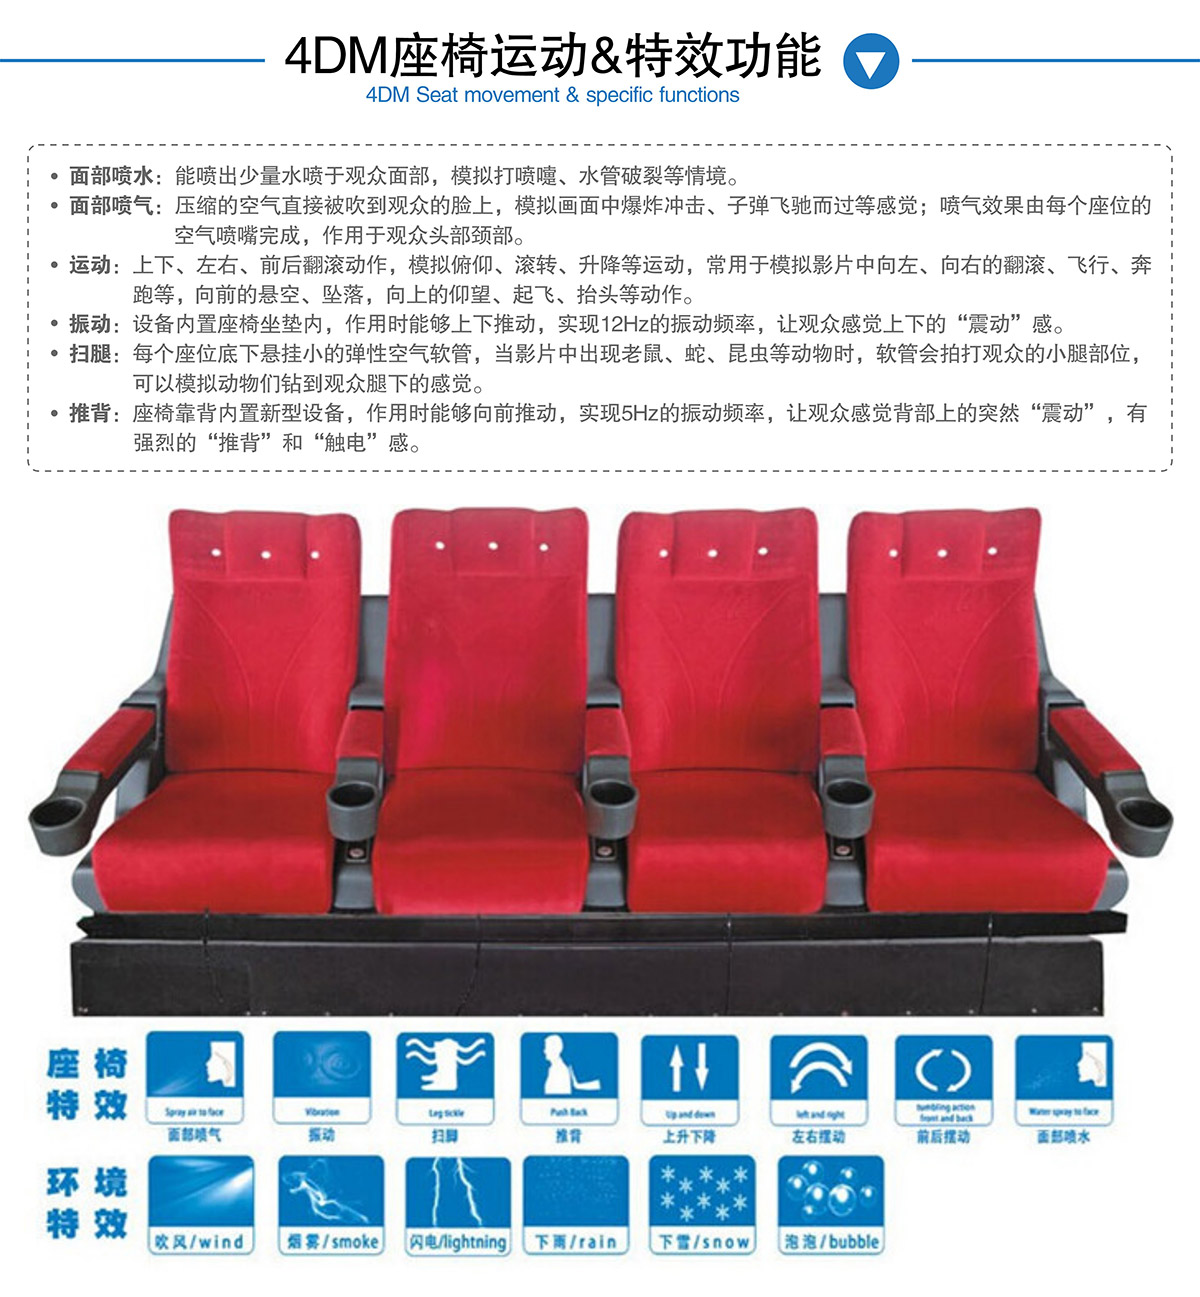 环幕影院4DM座椅运动和特效功能.jpg